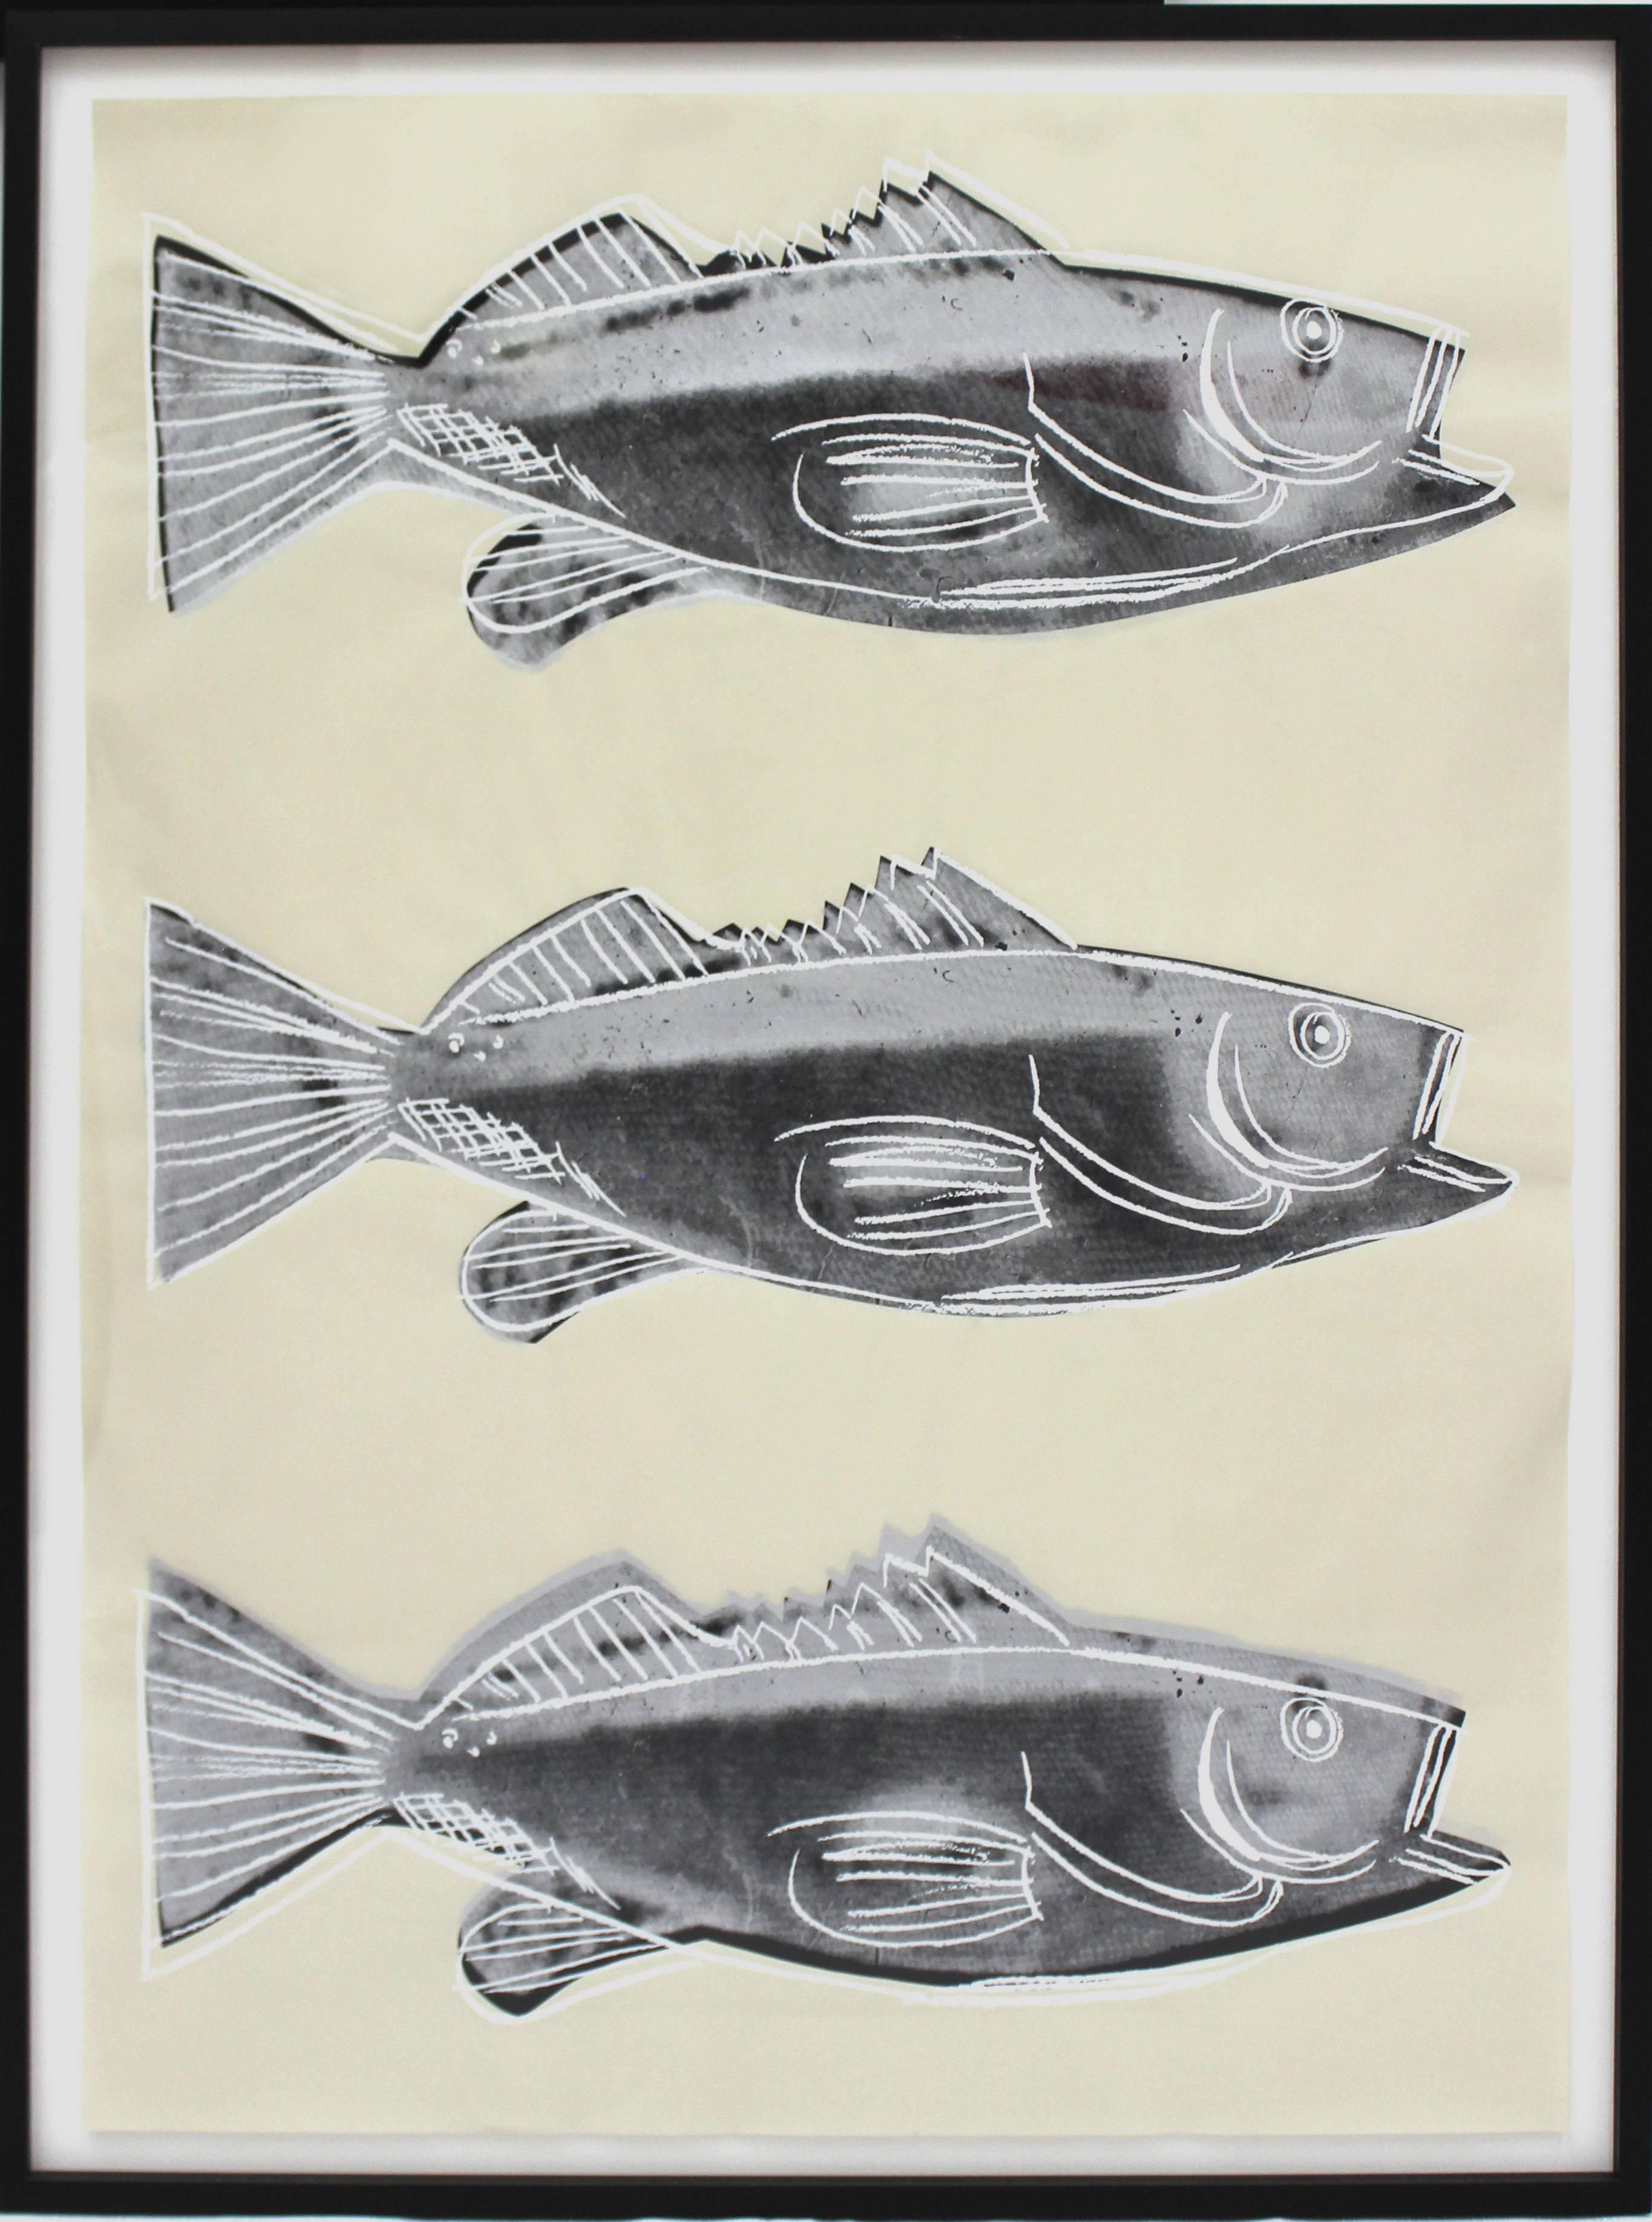 andy warhol fish print